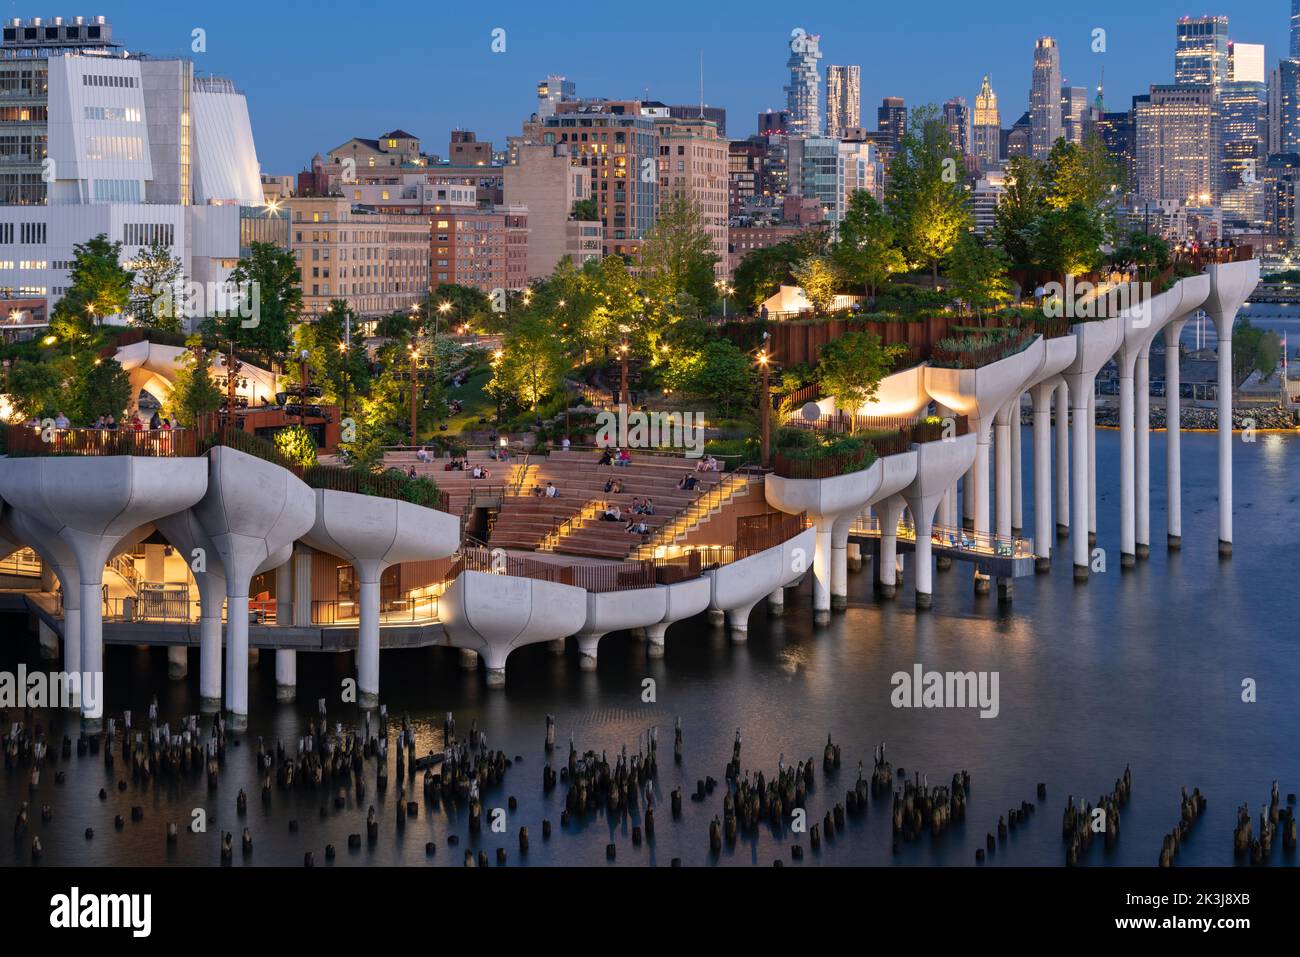 New York, parc public de Little Island en soirée. Parc surélevé avec amphithéâtre au Hudson River Park (Pier 55), West Village, Manhattan Banque D'Images